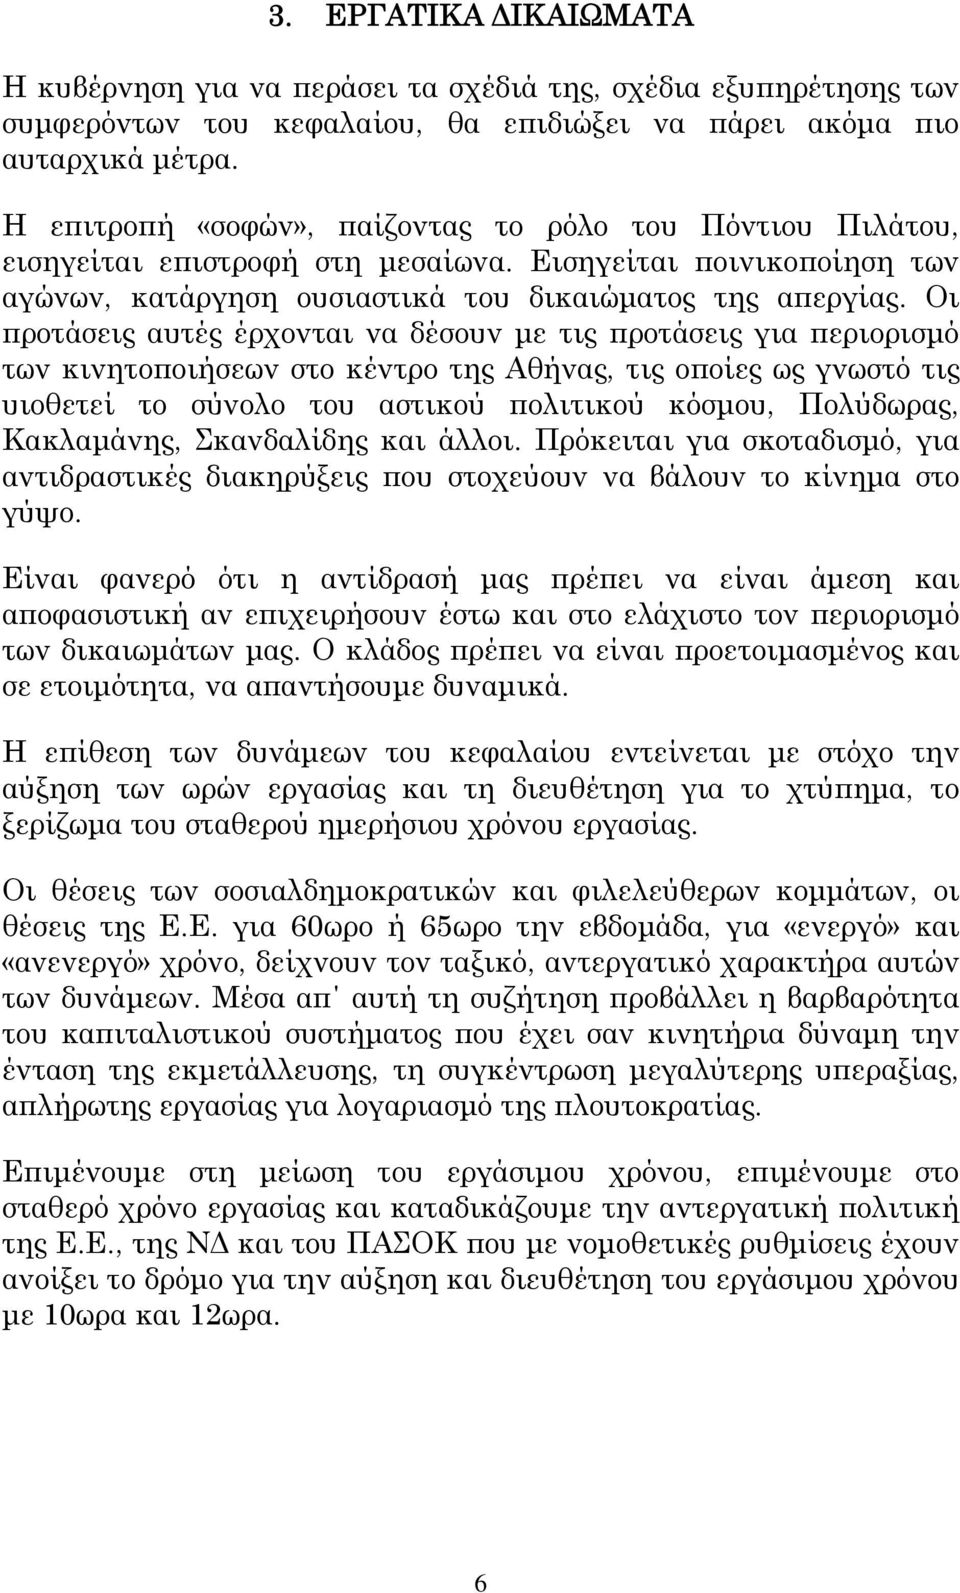 Οι προτάσεις αυτές έρχονται να δέσουν με τις προτάσεις για περιορισμό των κινητοποιήσεων στο κέντρο της Αθήνας, τις οποίες ως γνωστό τις υιοθετεί το σύνολο του αστικού πολιτικού κόσμου, Πολύδωρας,